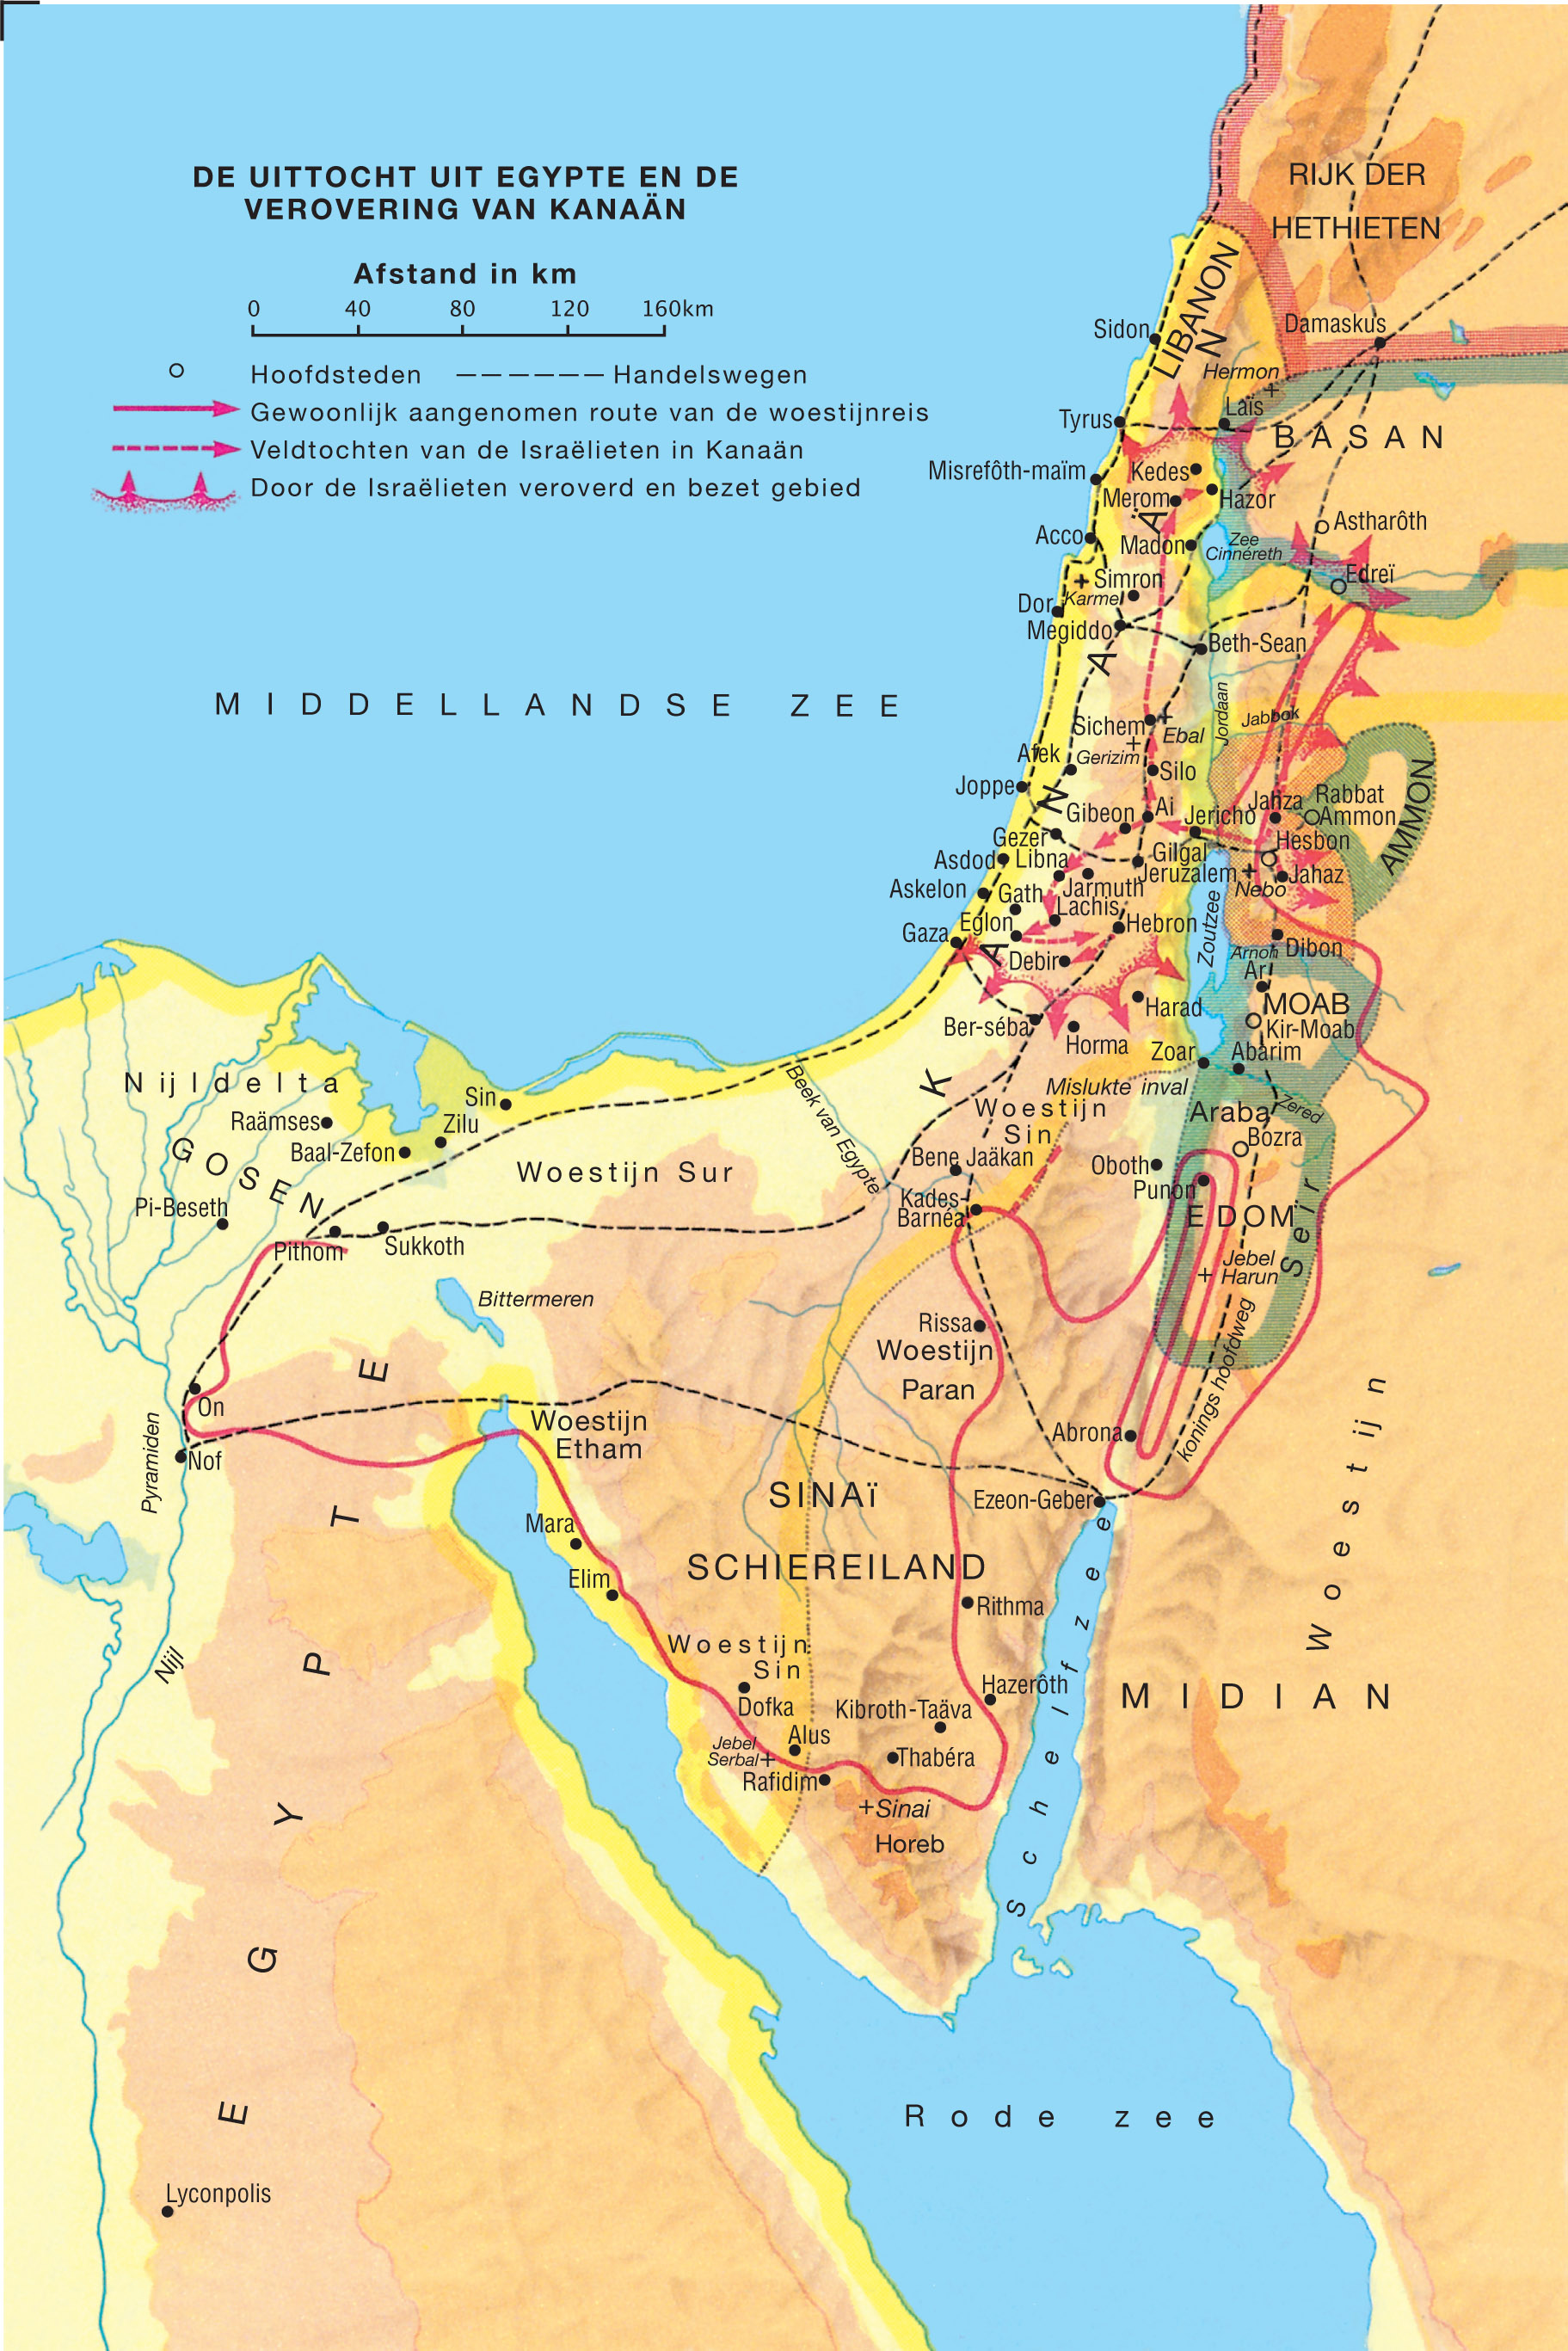 De uittocht uit Egypte en de verovering van Kanaän